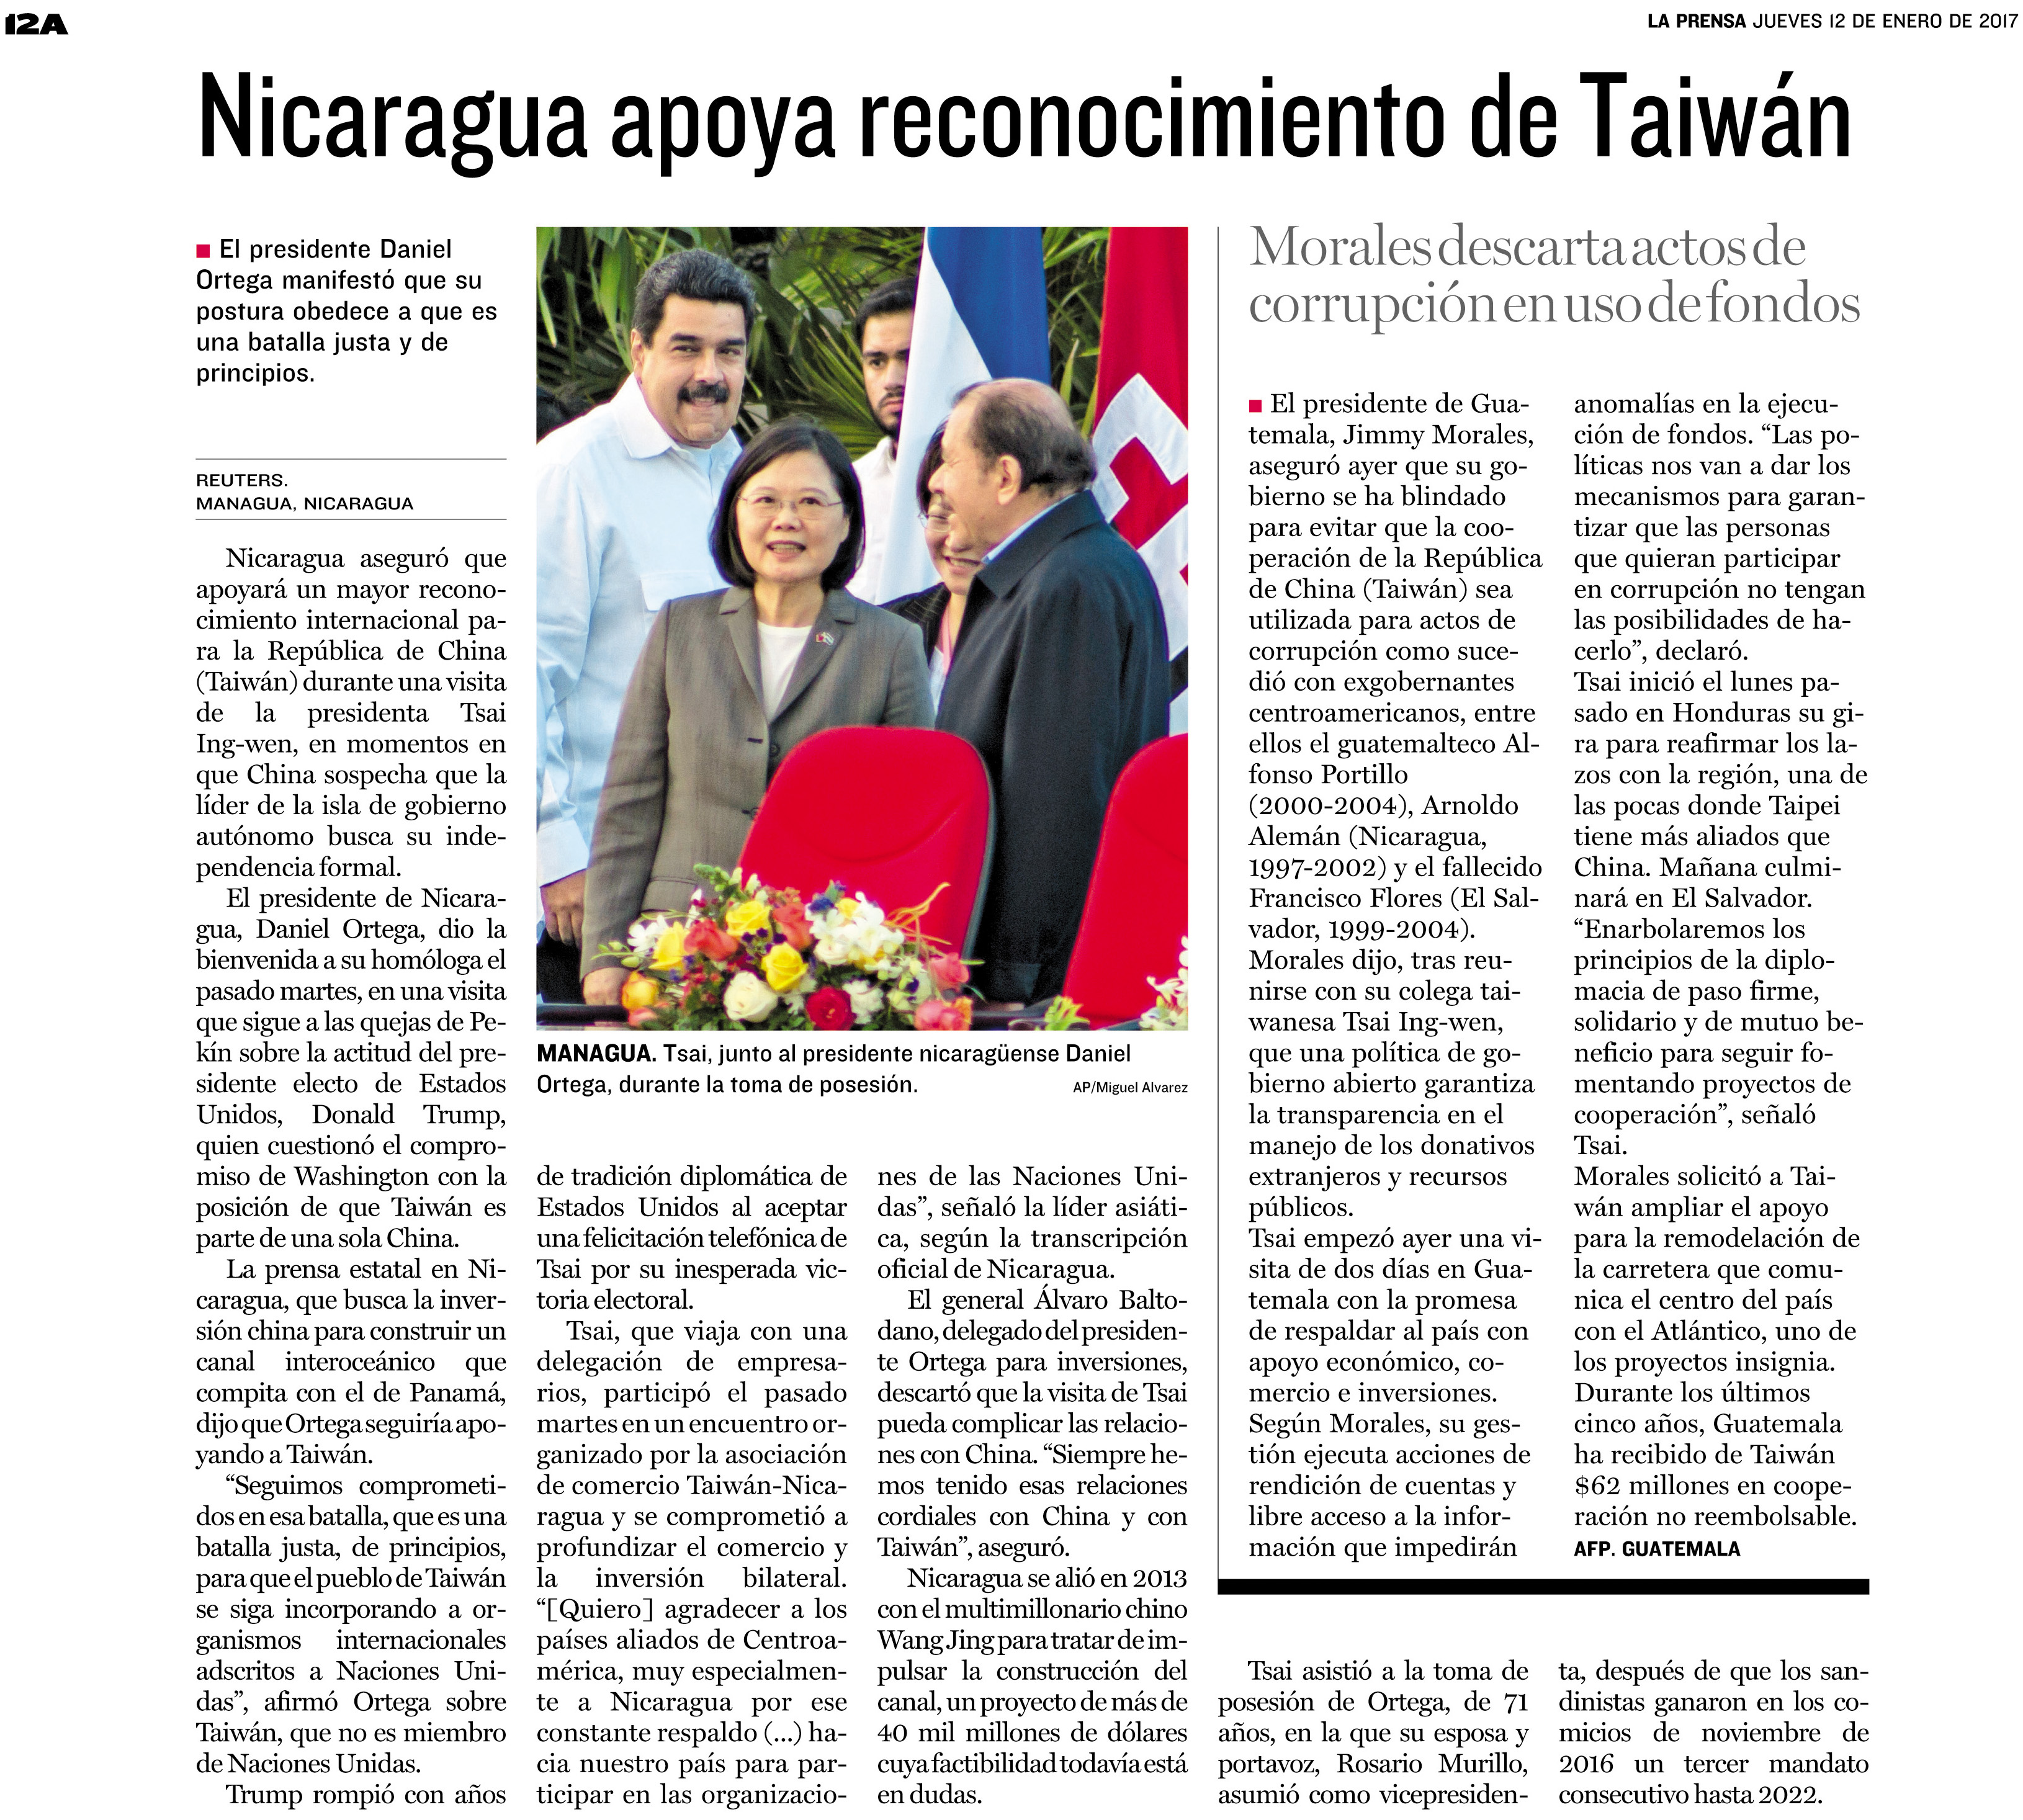 尼加拉瓜支持台灣之國際參與